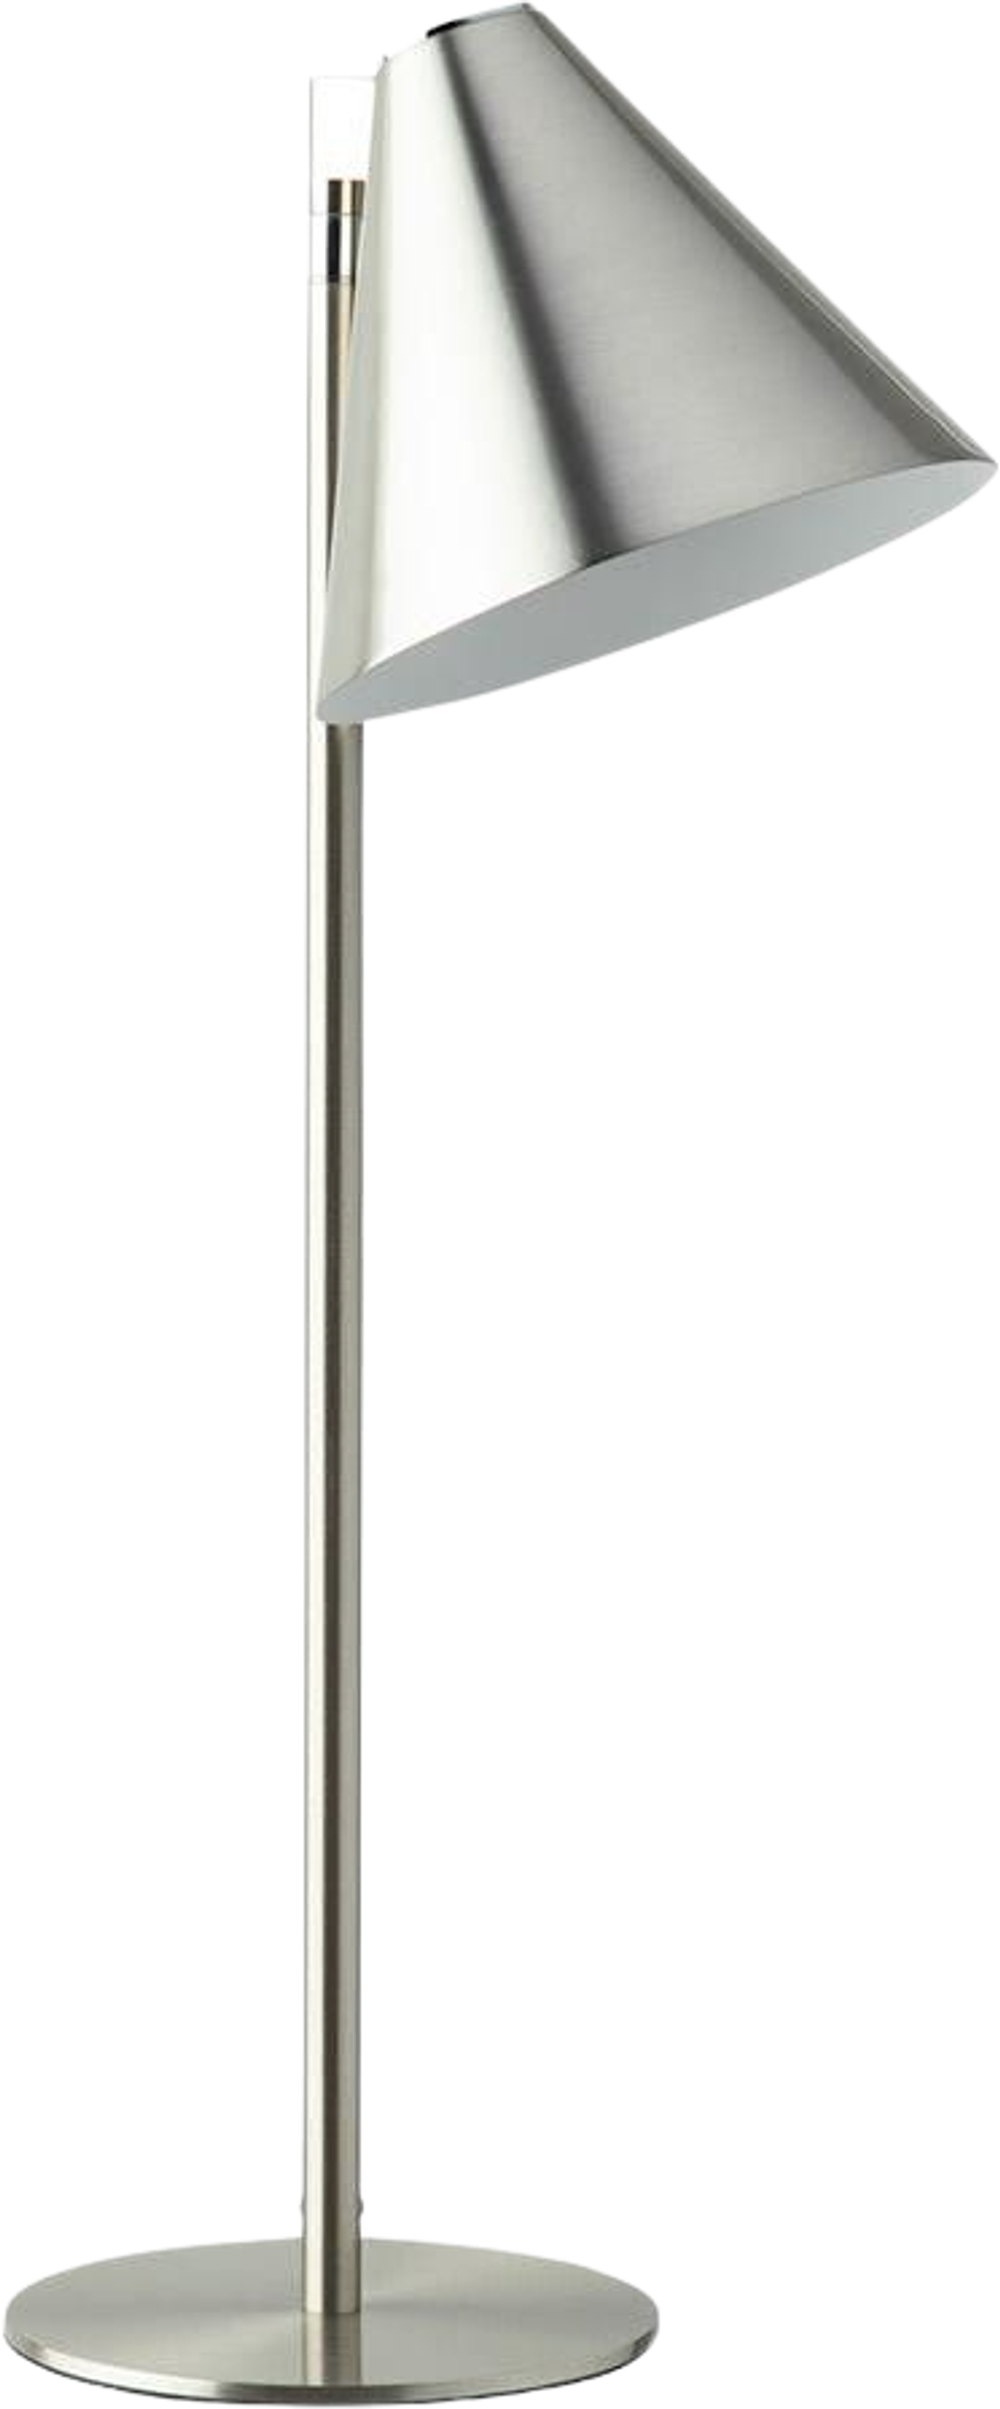 Tilbud på Turn bordlampe H:53 cm (SØLV ONESIZE) (SINNERUP) fra Sinnerup til 499 kr.